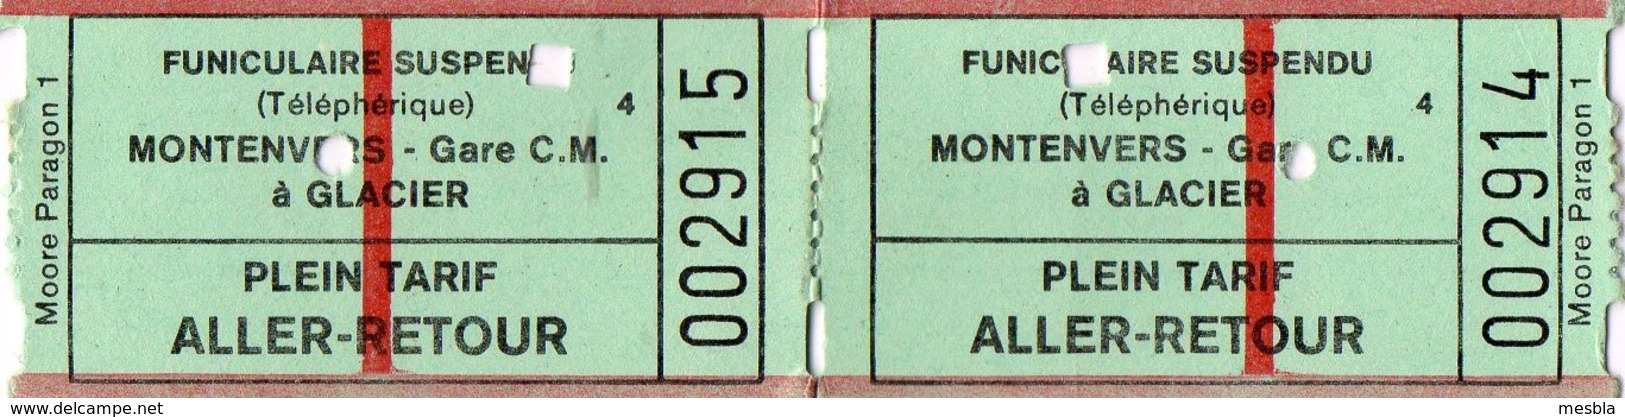 2 Tickets Anciens  Funiculaire Suspendu ( Téléphérique)  MONTENVERS  Gare C.M  à GLACIER - Tickets D'entrée